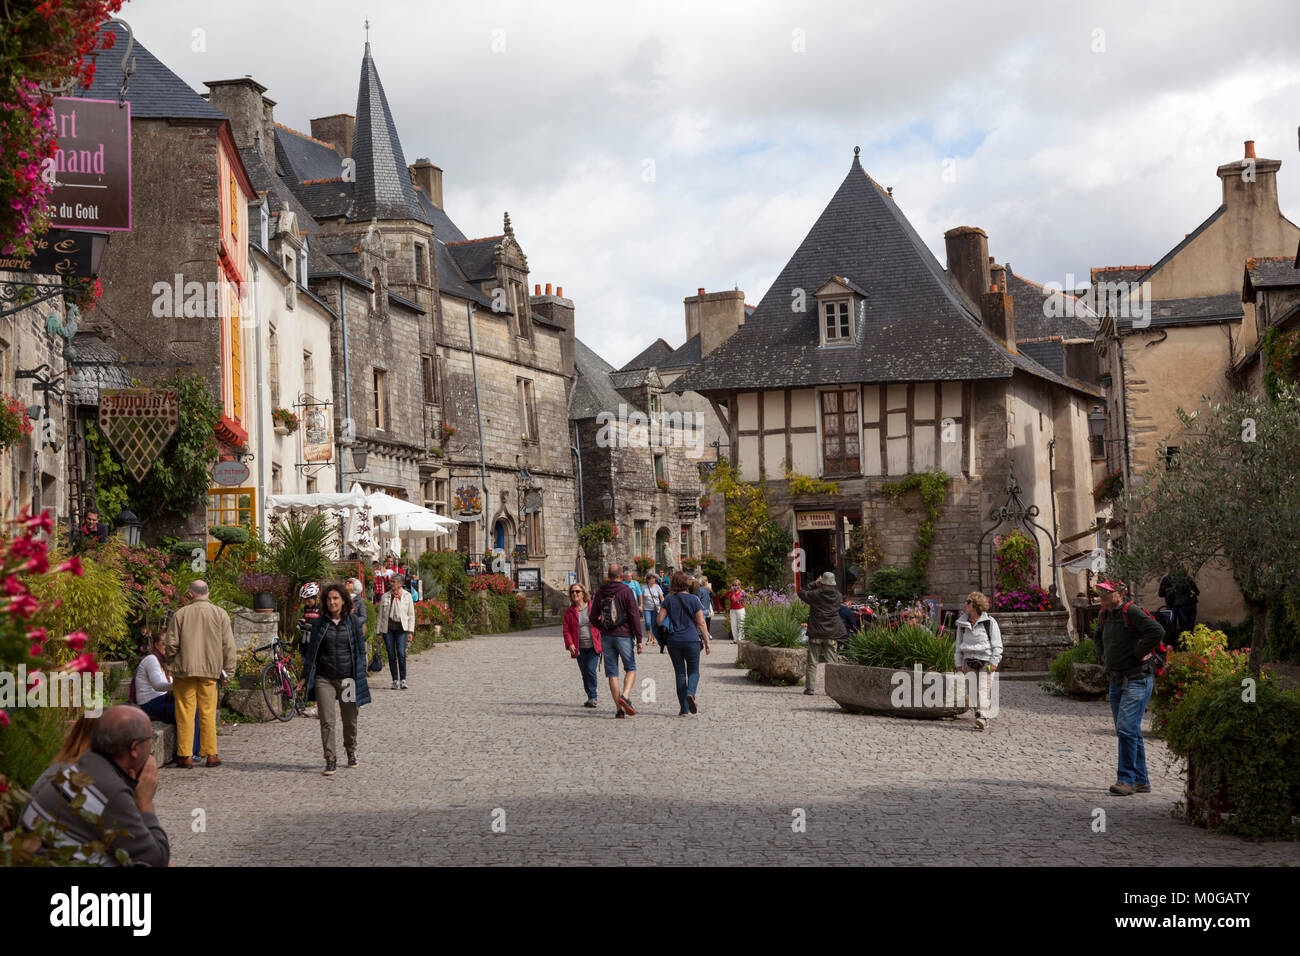 La place du puits, à Rochefort en Terre (Bretagne - France). Ce quartier animé de la place a été classée comme la plus belle de France 2016 village. C Banque D'Images